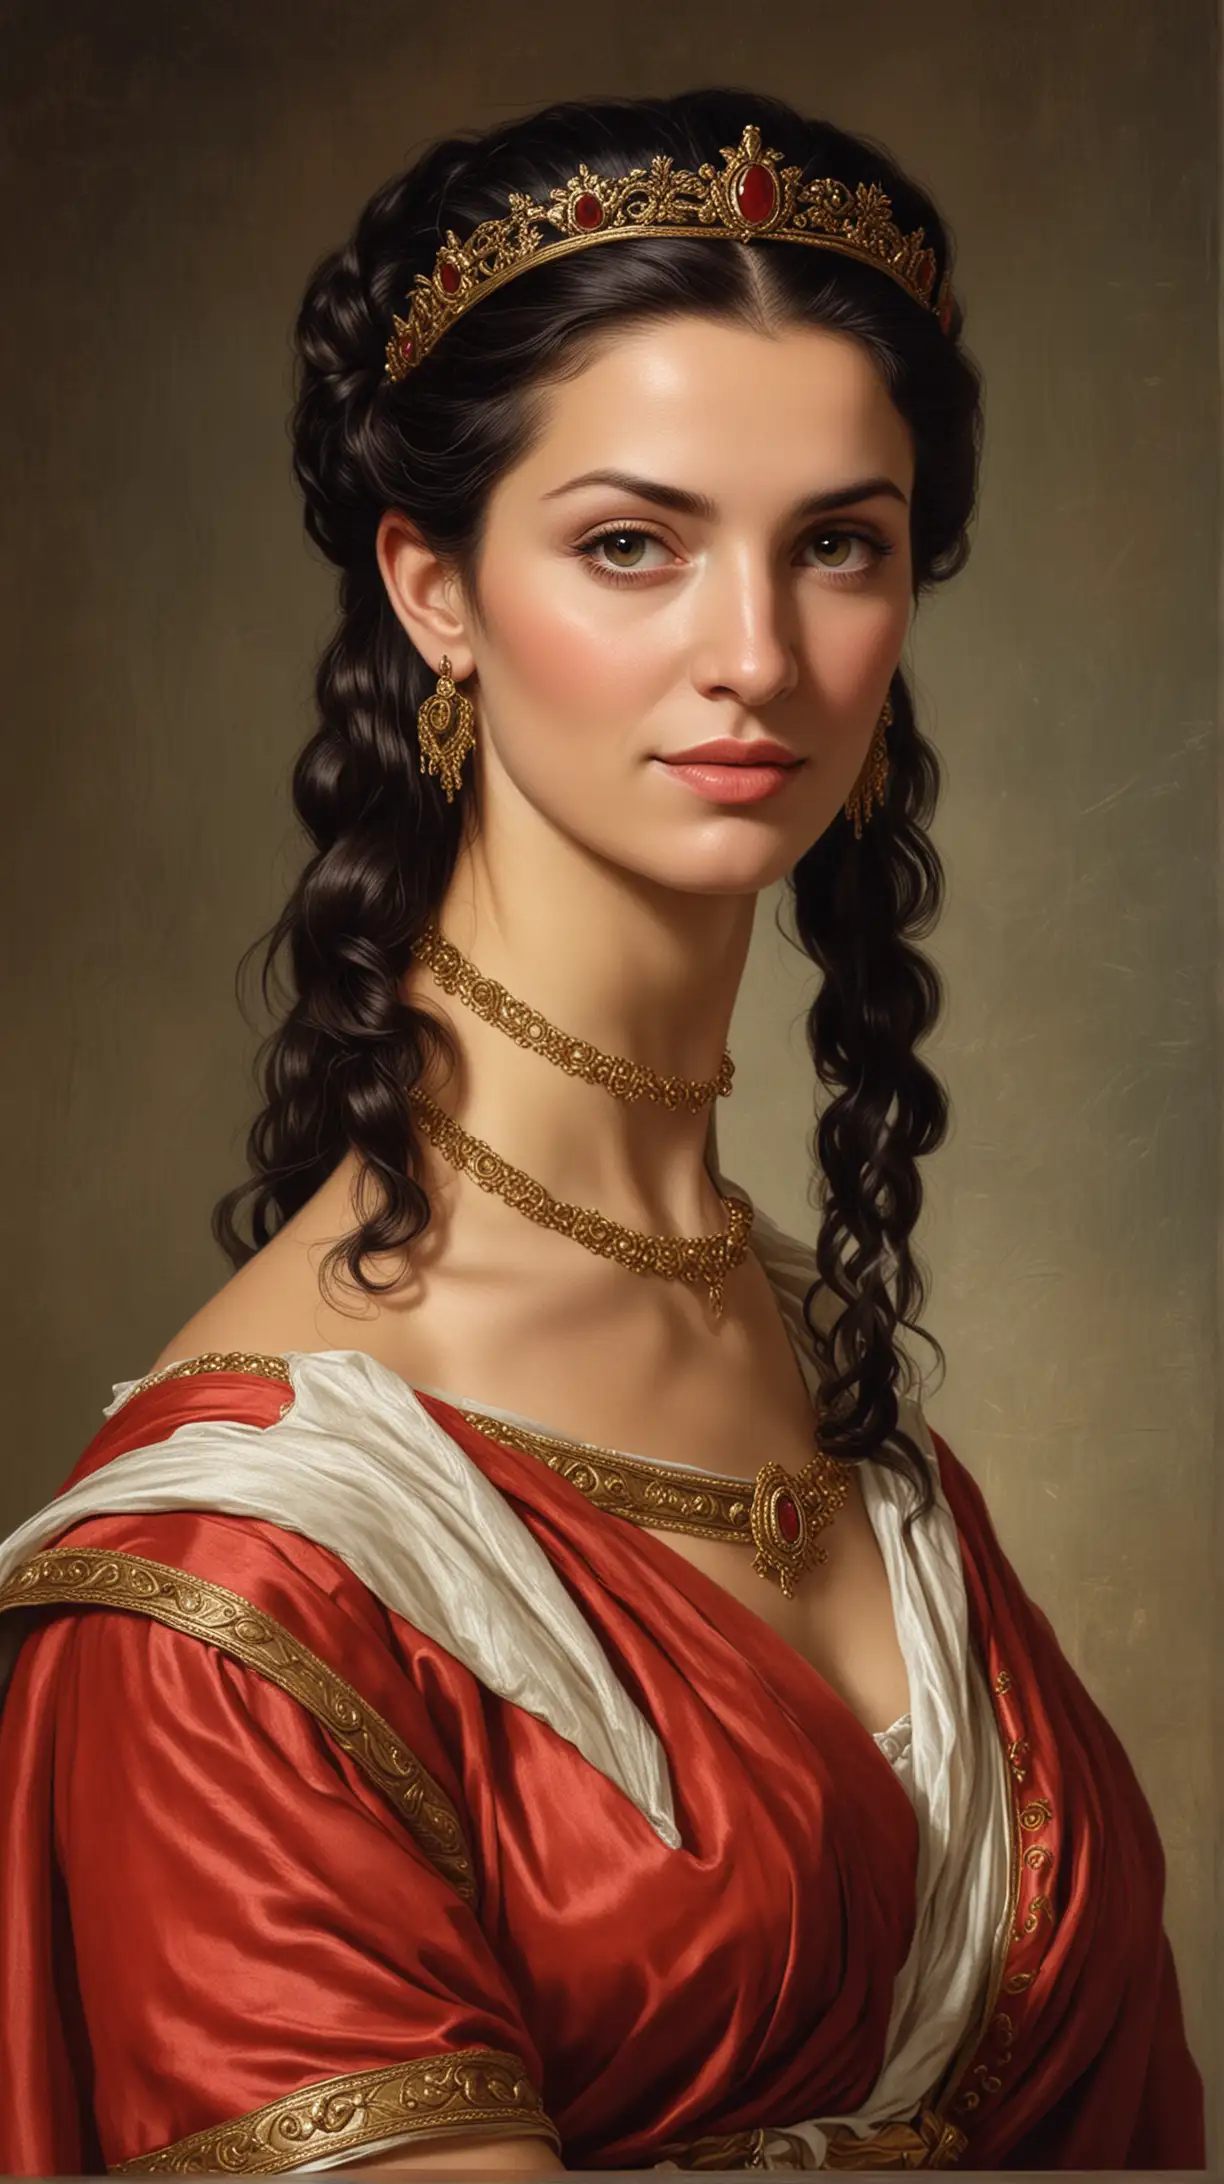 Livia Drusilla (Roman Empire)
